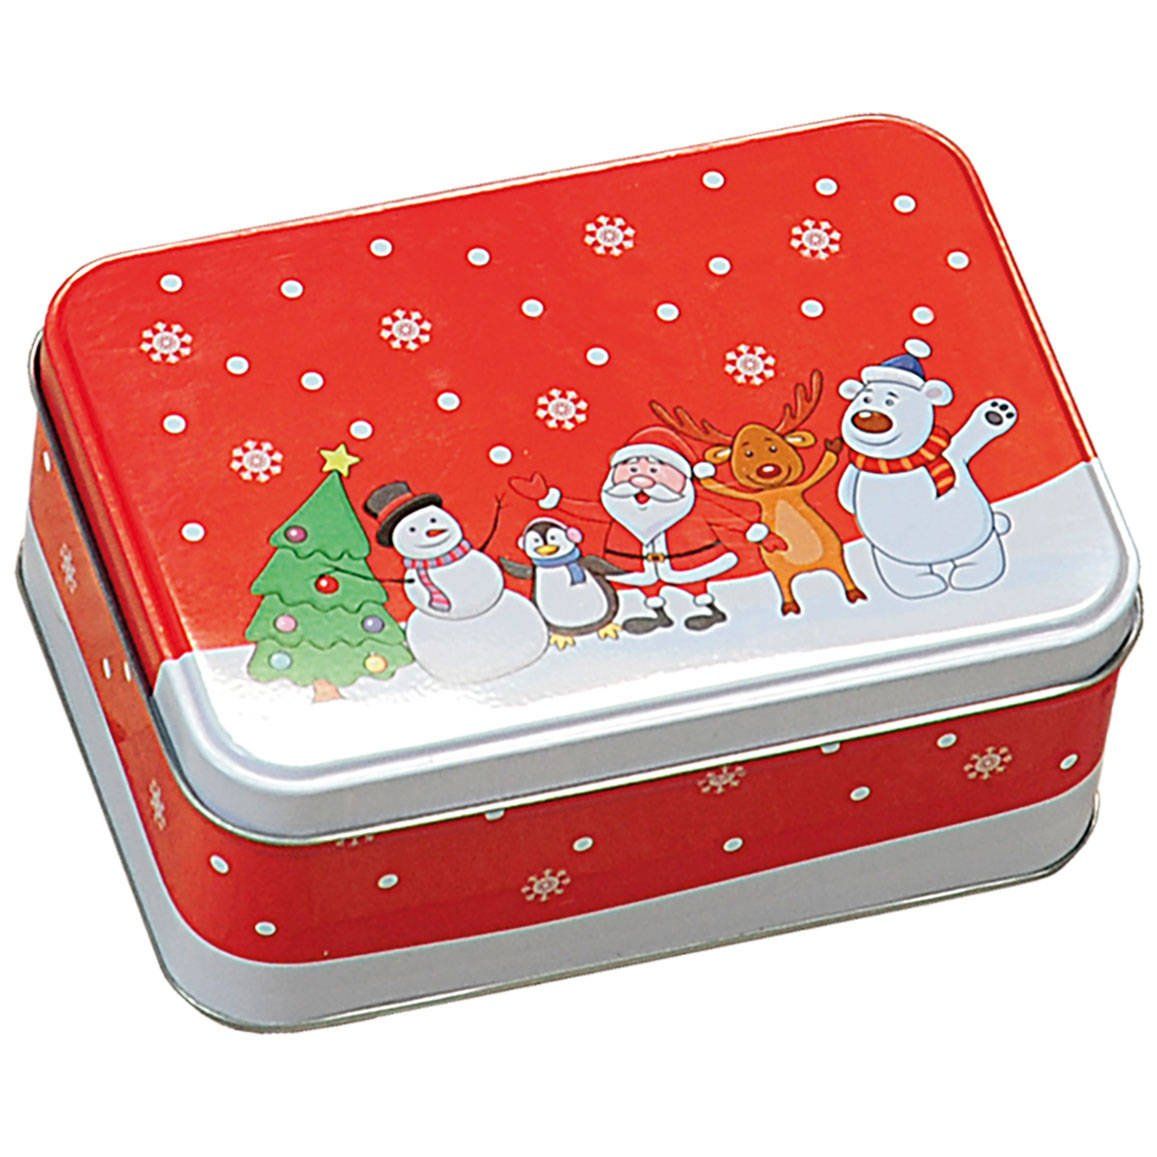 Plechovka na sušenky, červená s vánočním motivem, KESPER - EMAKO.CZ s.r.o.